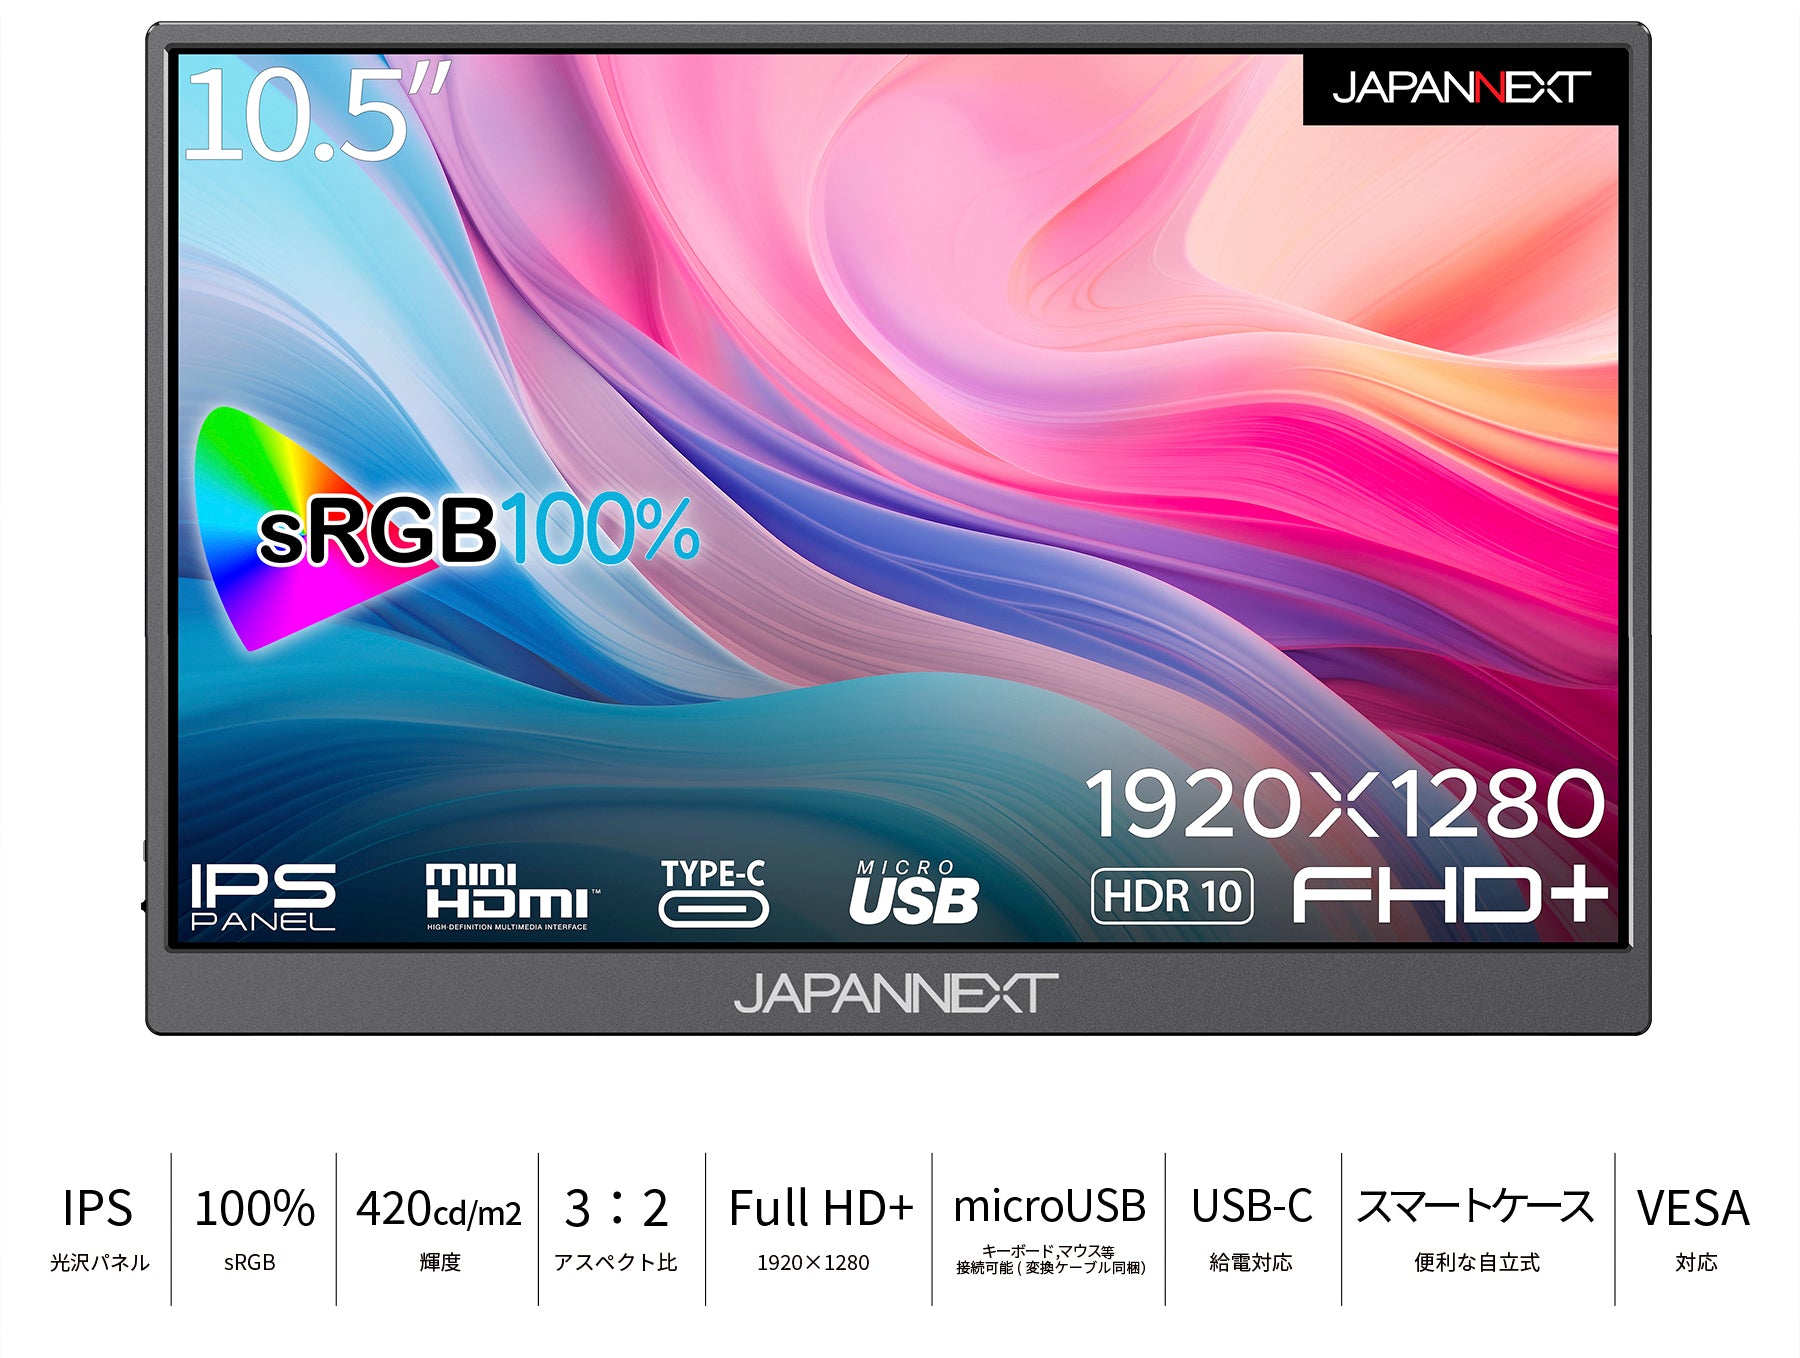 JAPANNEXT 10.5インチ IPSパネル フルHD+(1920x1280)解像度